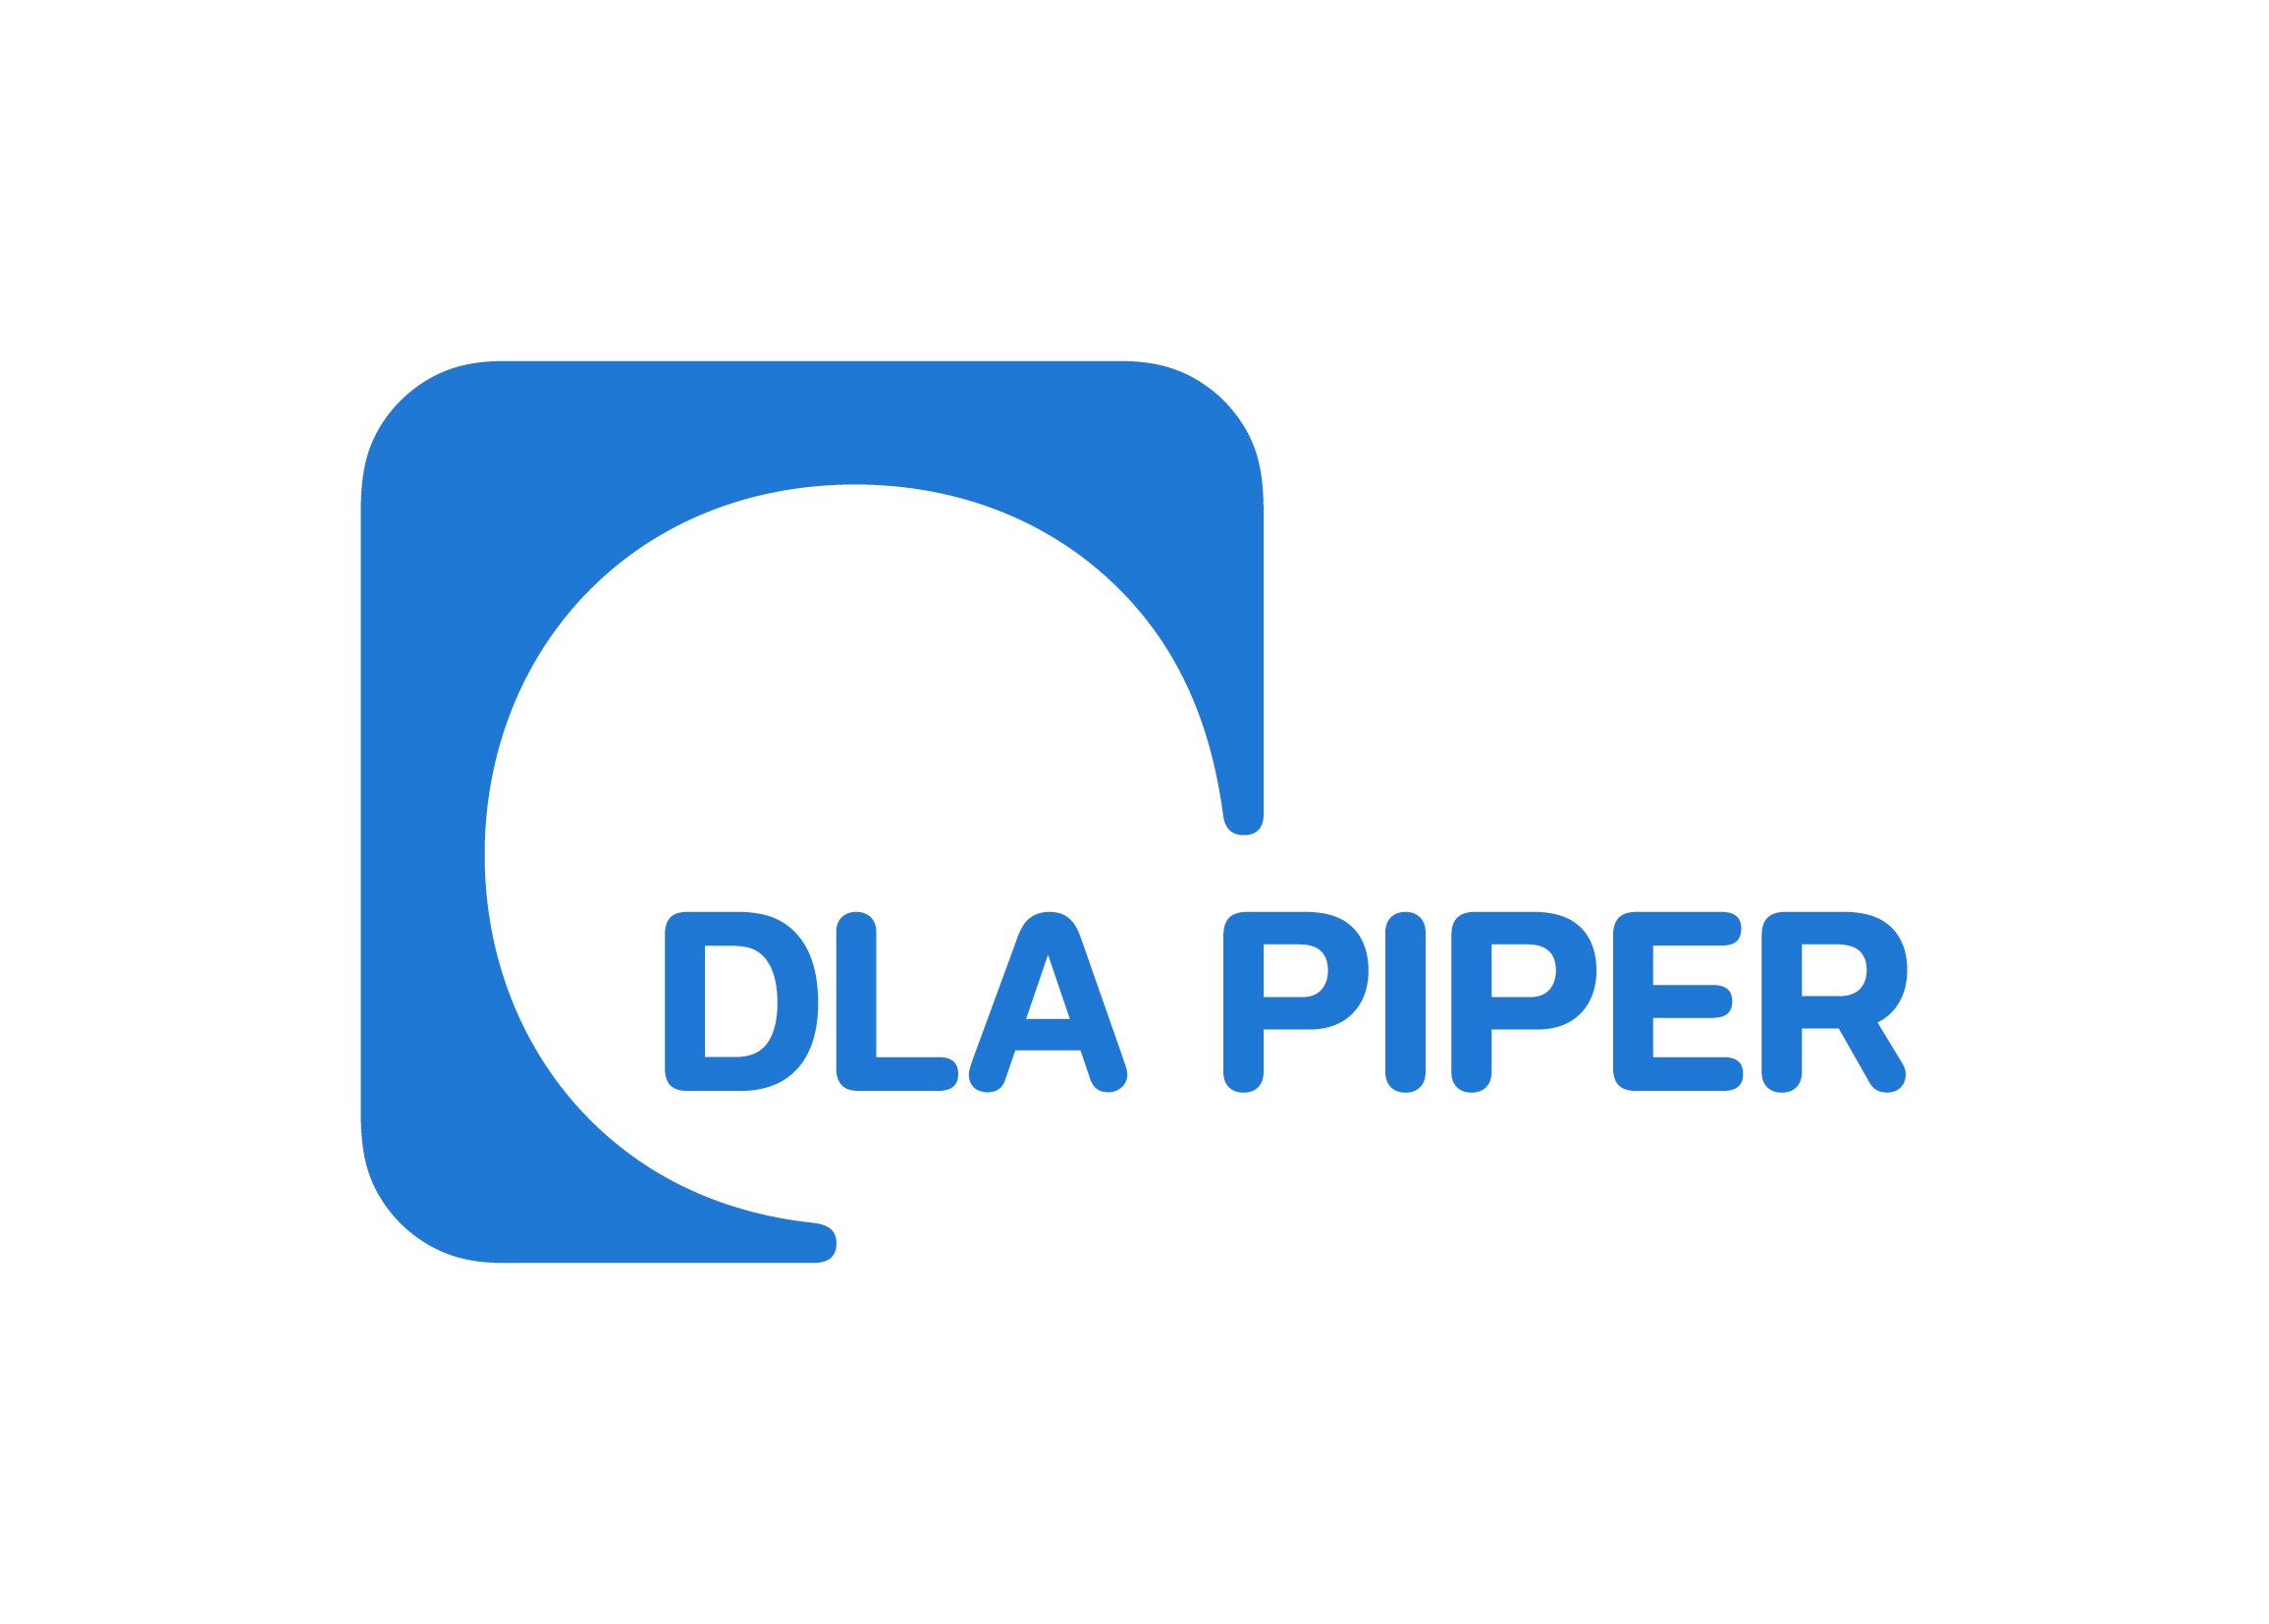 DLA Piper LLP (US)